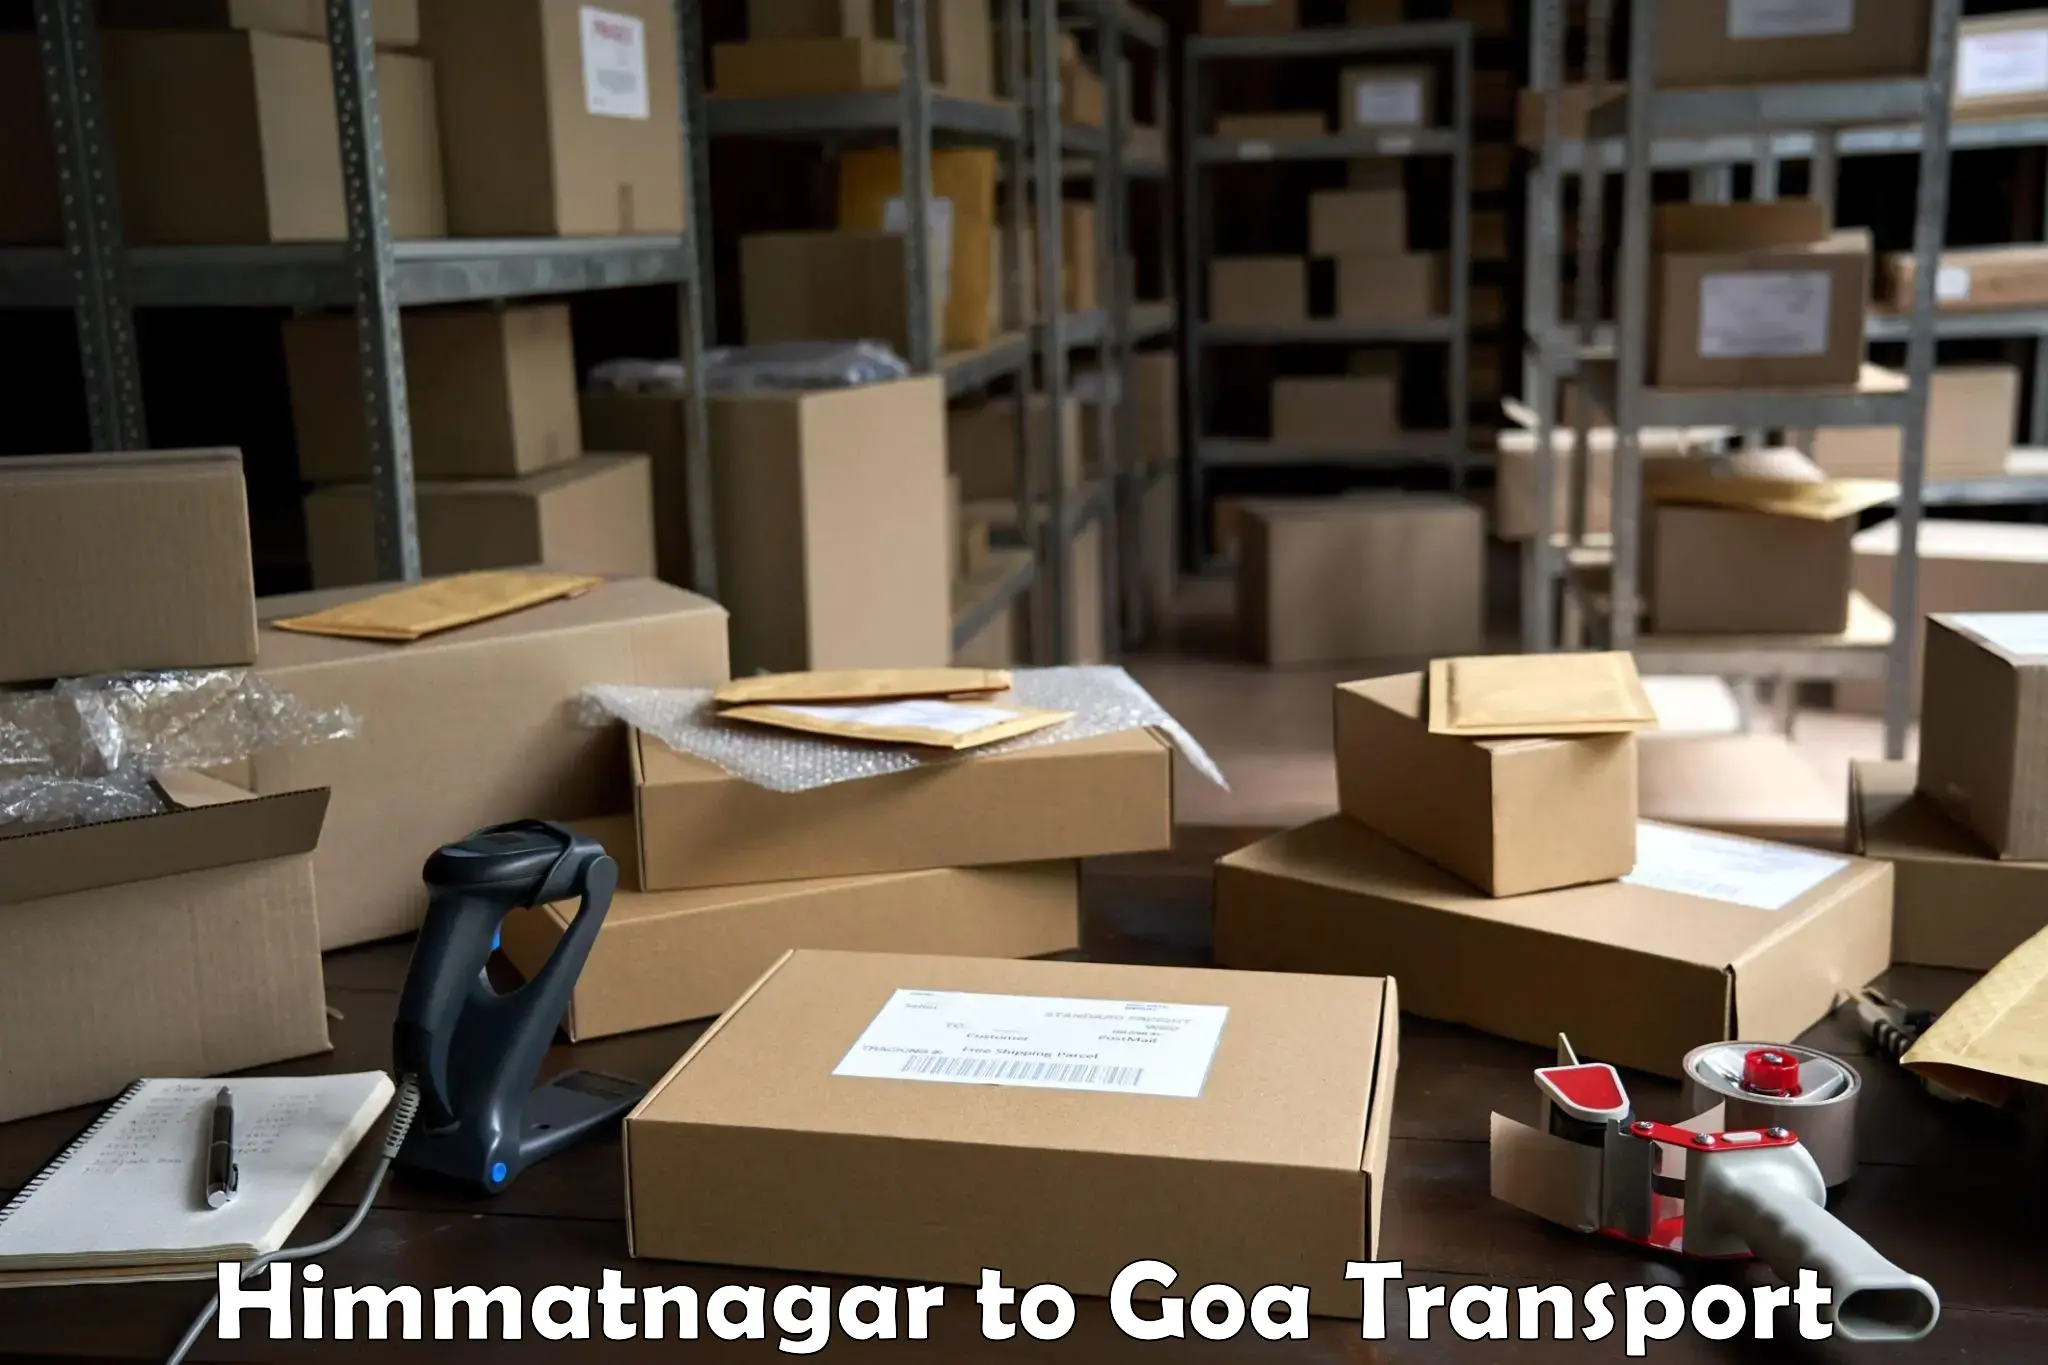 Daily transport service Himmatnagar to Ponda